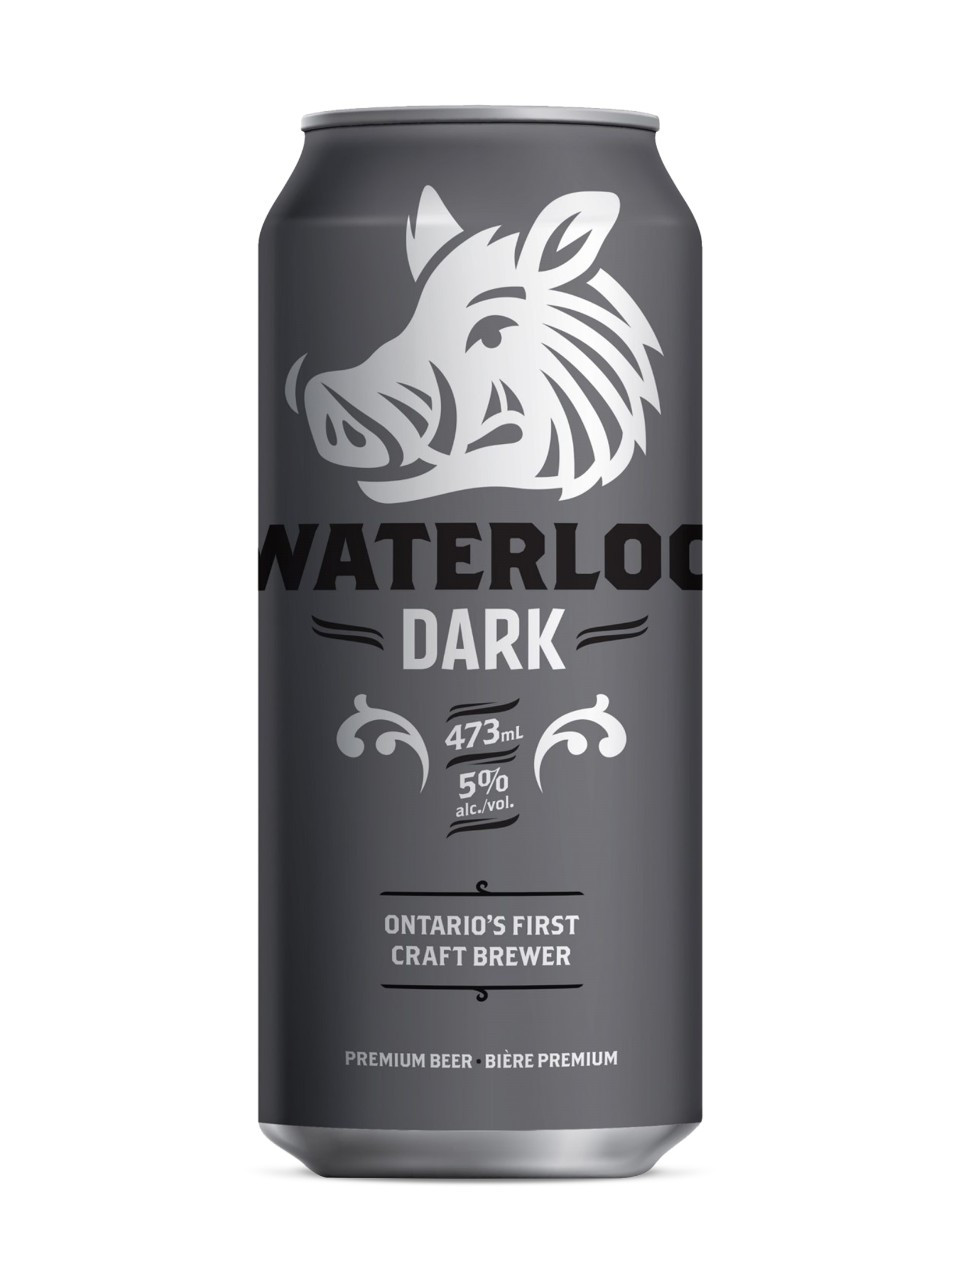 Waterloo dark